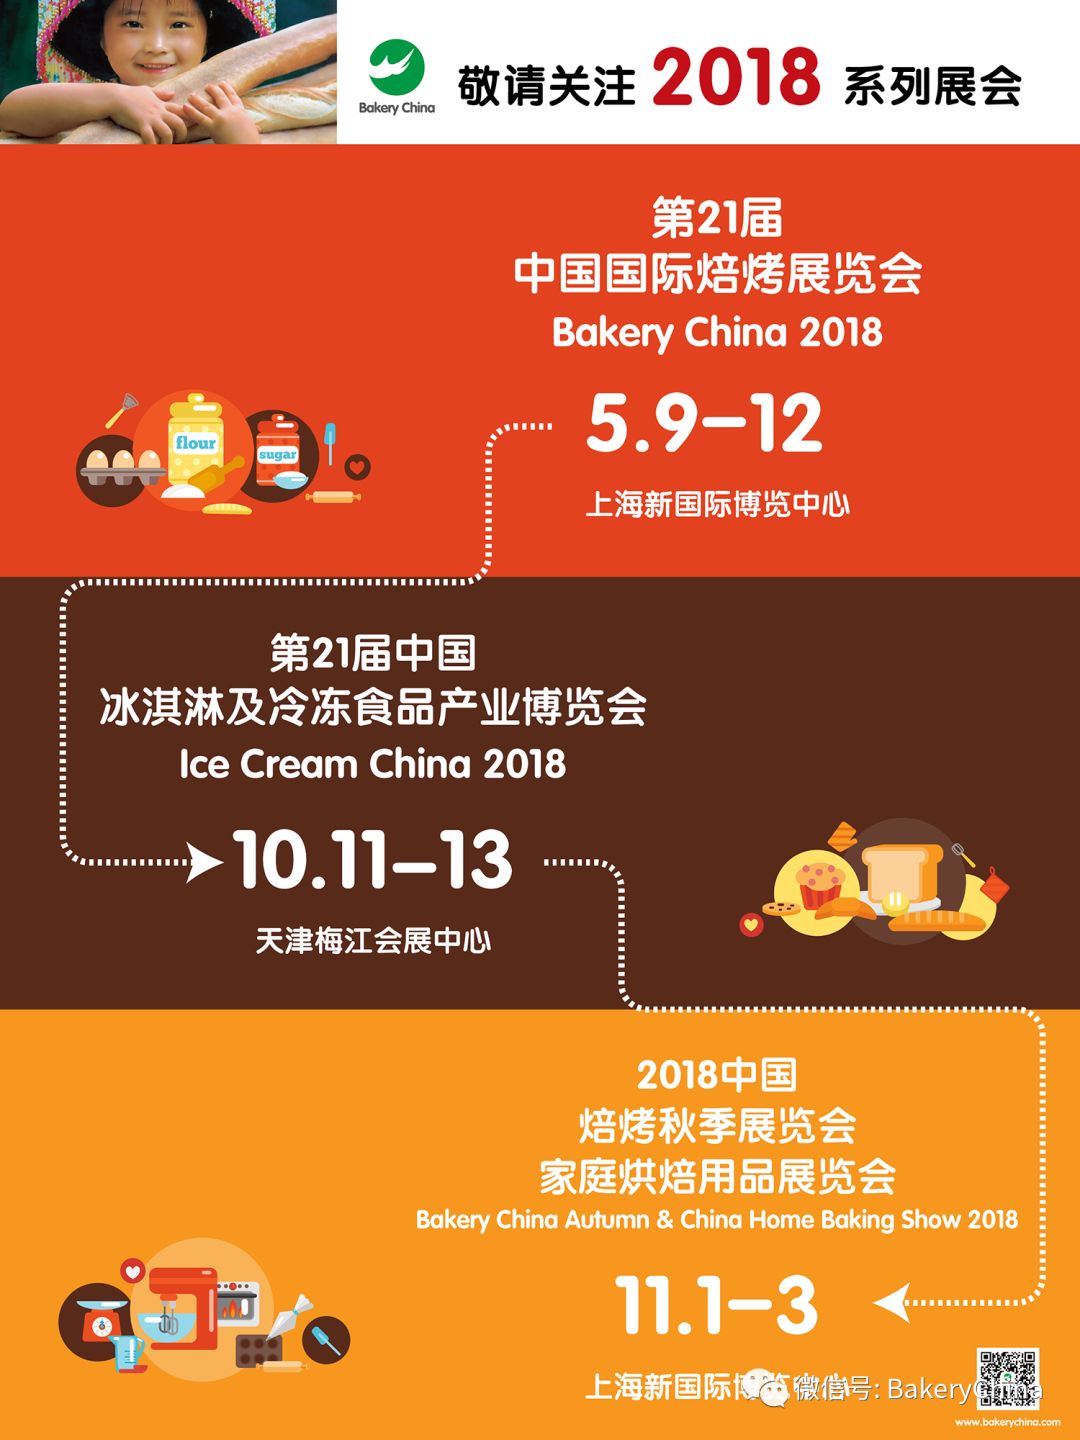 烘焙,焙烤,上海焙烤展,中国国际焙烤展览会BakeryChina,食品展会大全,L9包装馆